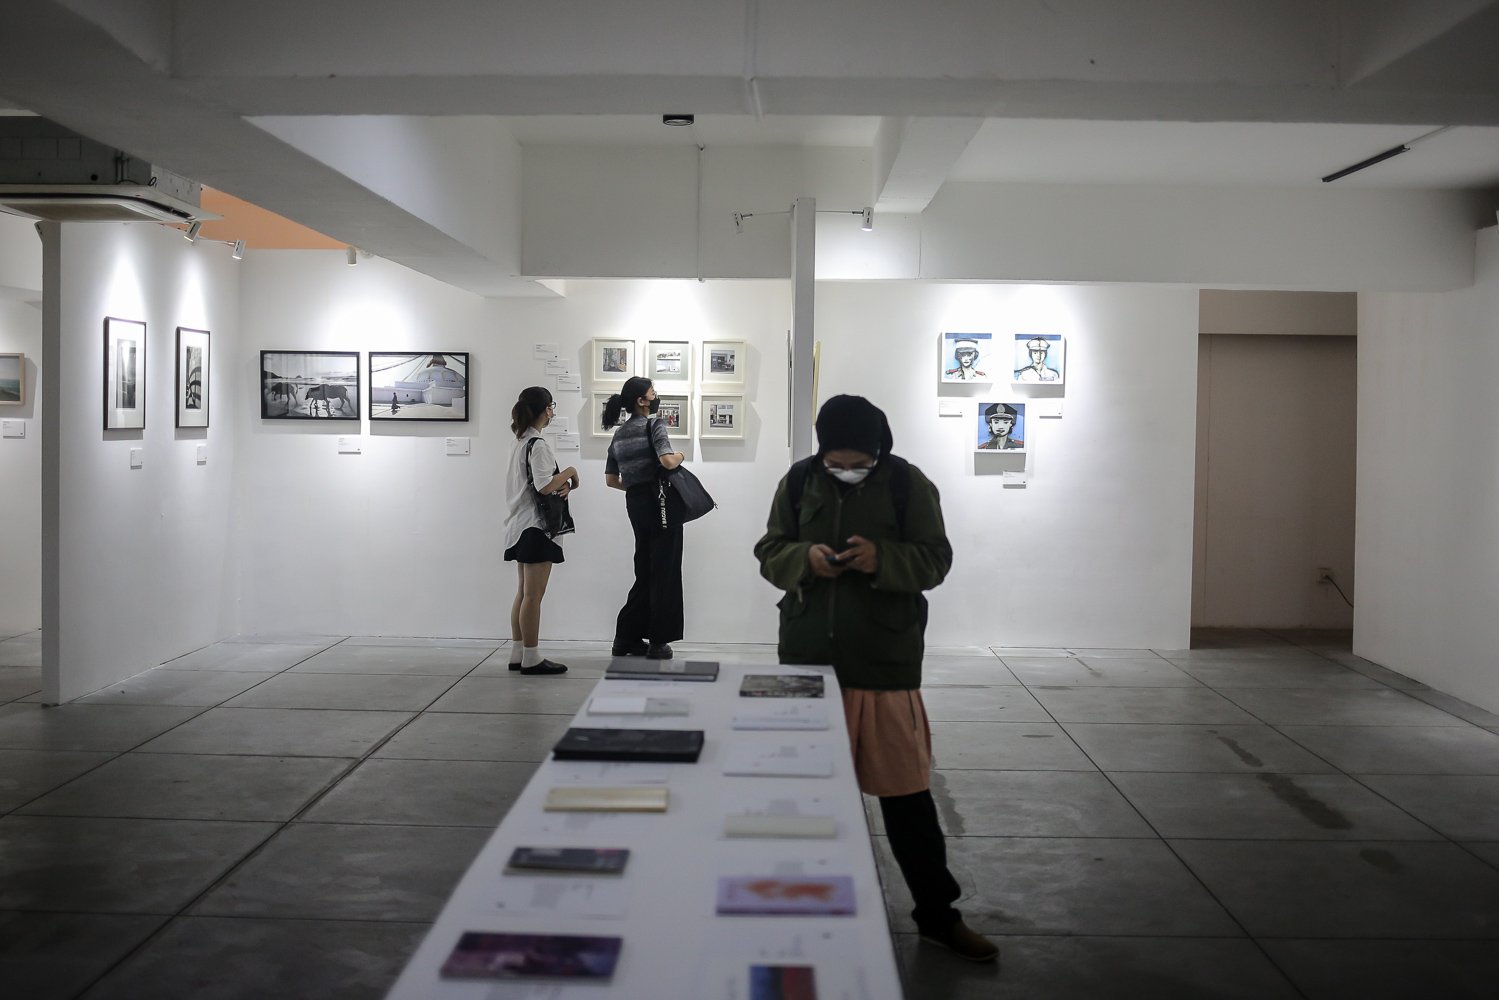 Pengunjung melihat karya fotografi yang dipamerkan dalam Jakarta International Photo Festival (JIPFest) 2022 di Soup N Film, Jakarta, Jumat (9/9). JIPFest 2022 menghadirkan kurang lebih 50 tokoh fotografi dari sembilan negara yang akan mengisi 53 acara dan berlangsung pada 9-25 September 2022 di lima lokasi area Blok M, Jakarta Selatan.